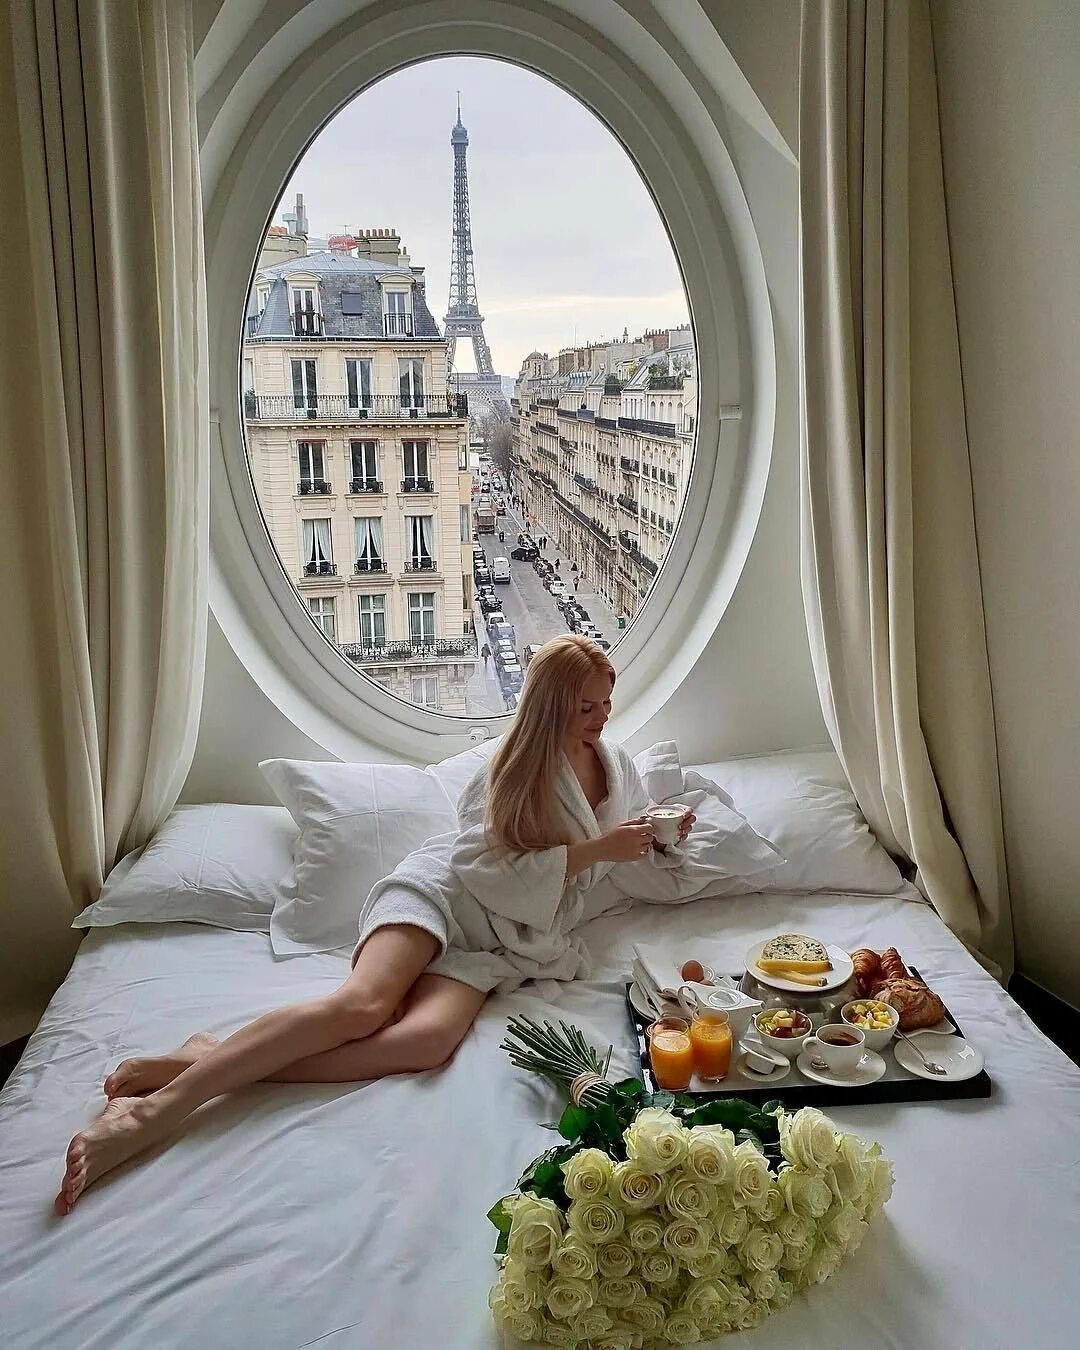 Роскошный словно. Романтическое утро. Красивая женщина утром. Фотосессия в отеле. Завтрак на балконе.